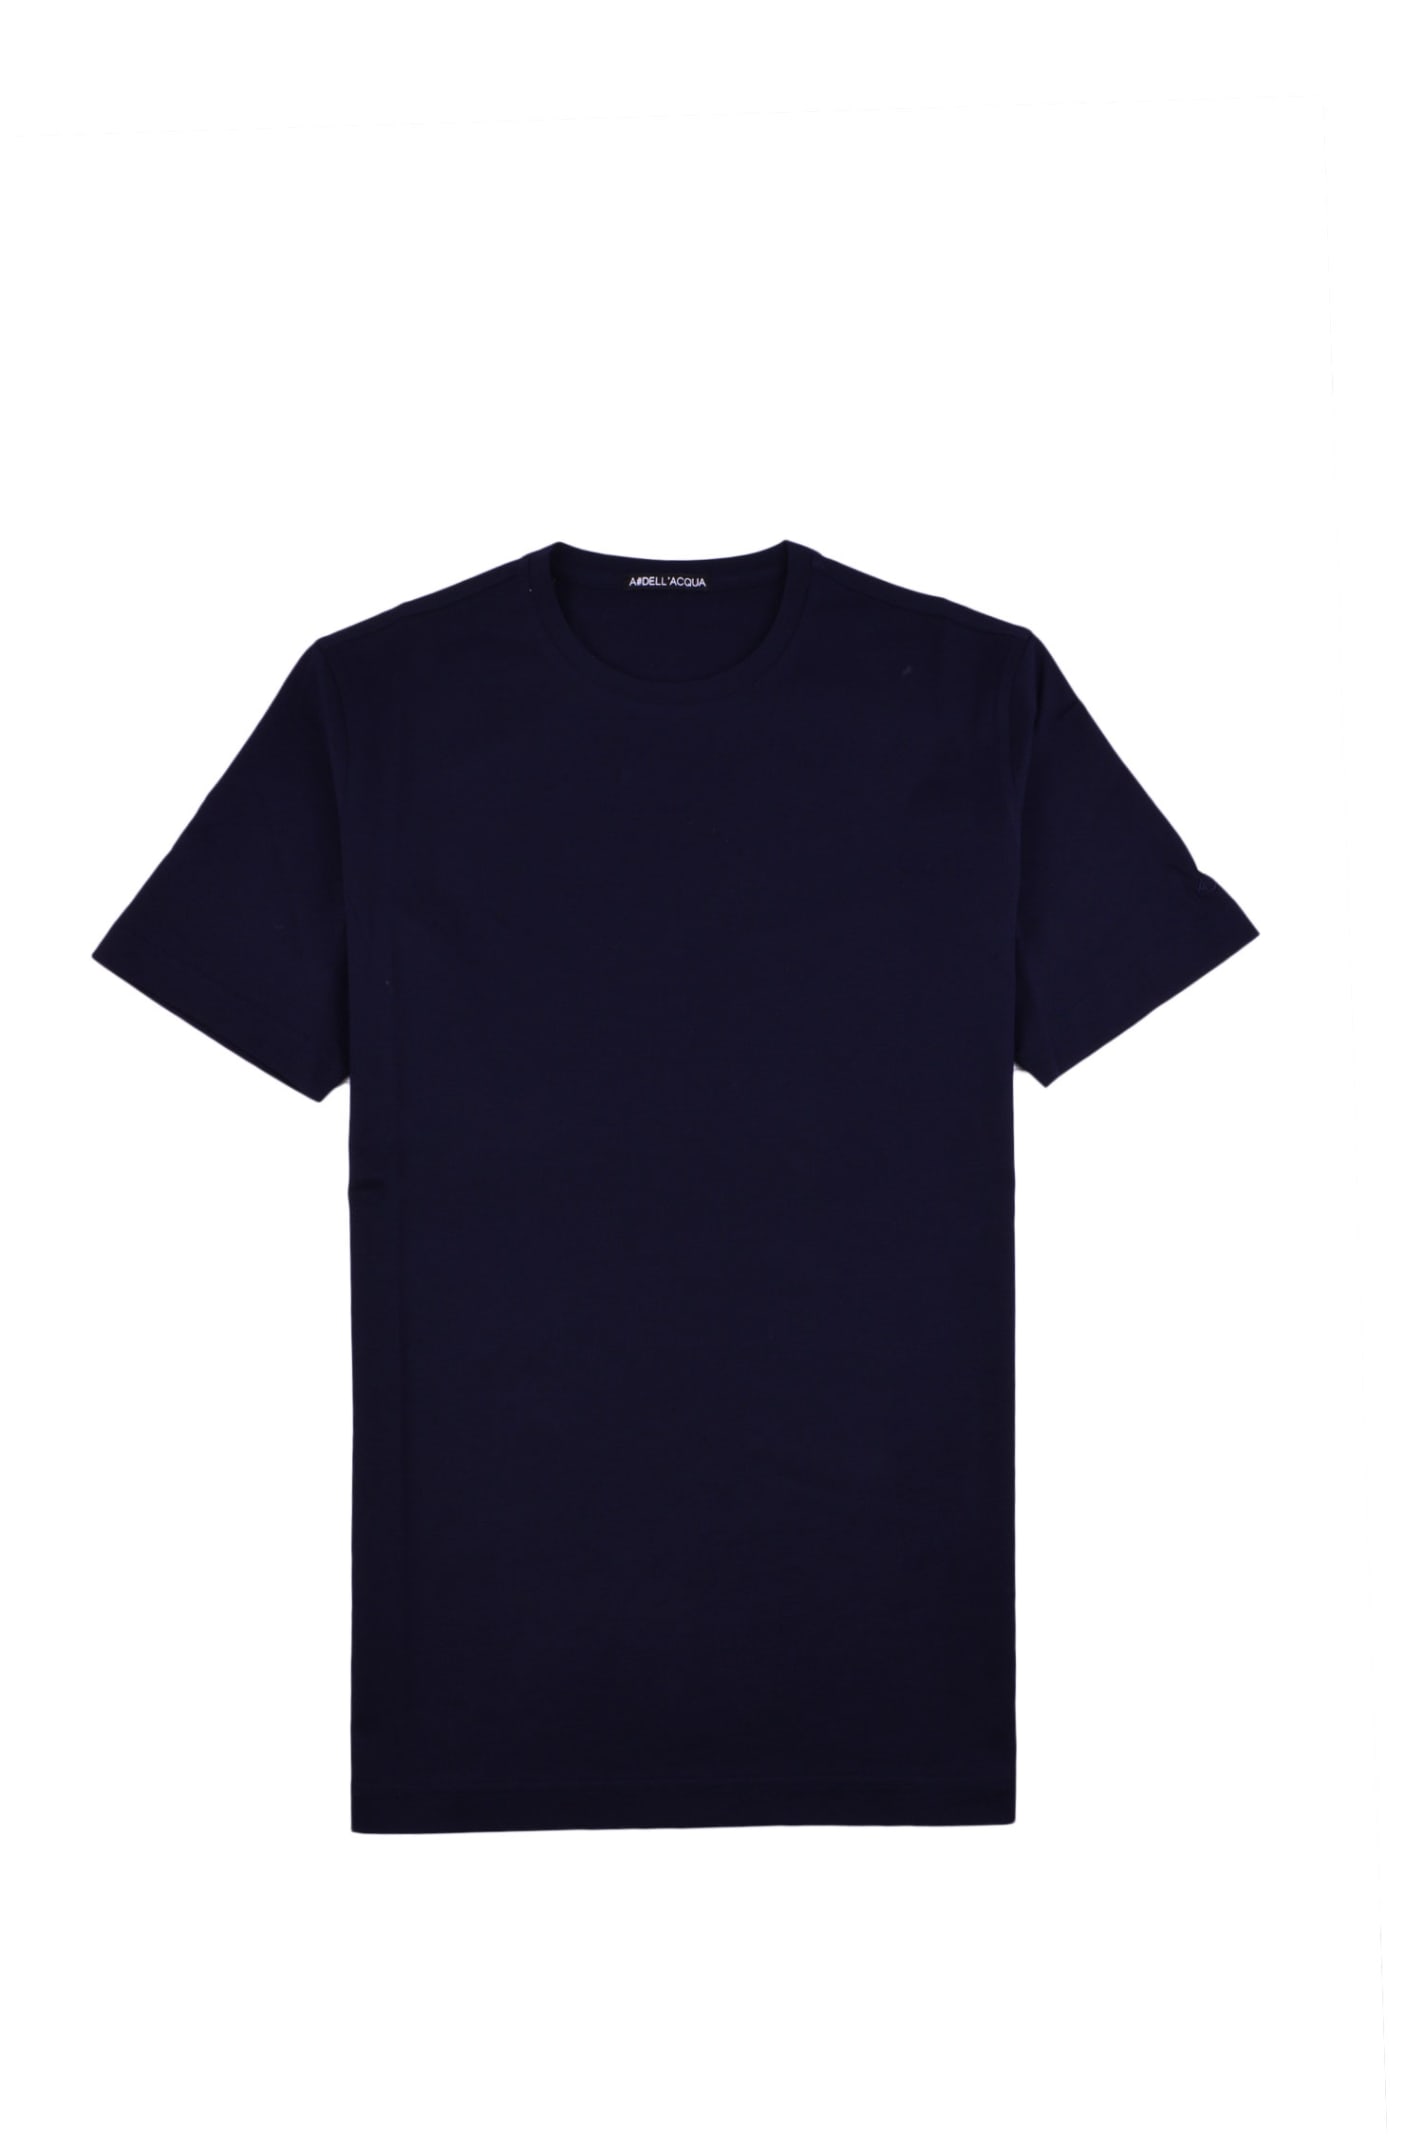 Alessandro Dell'acqua T-shirt In Blue